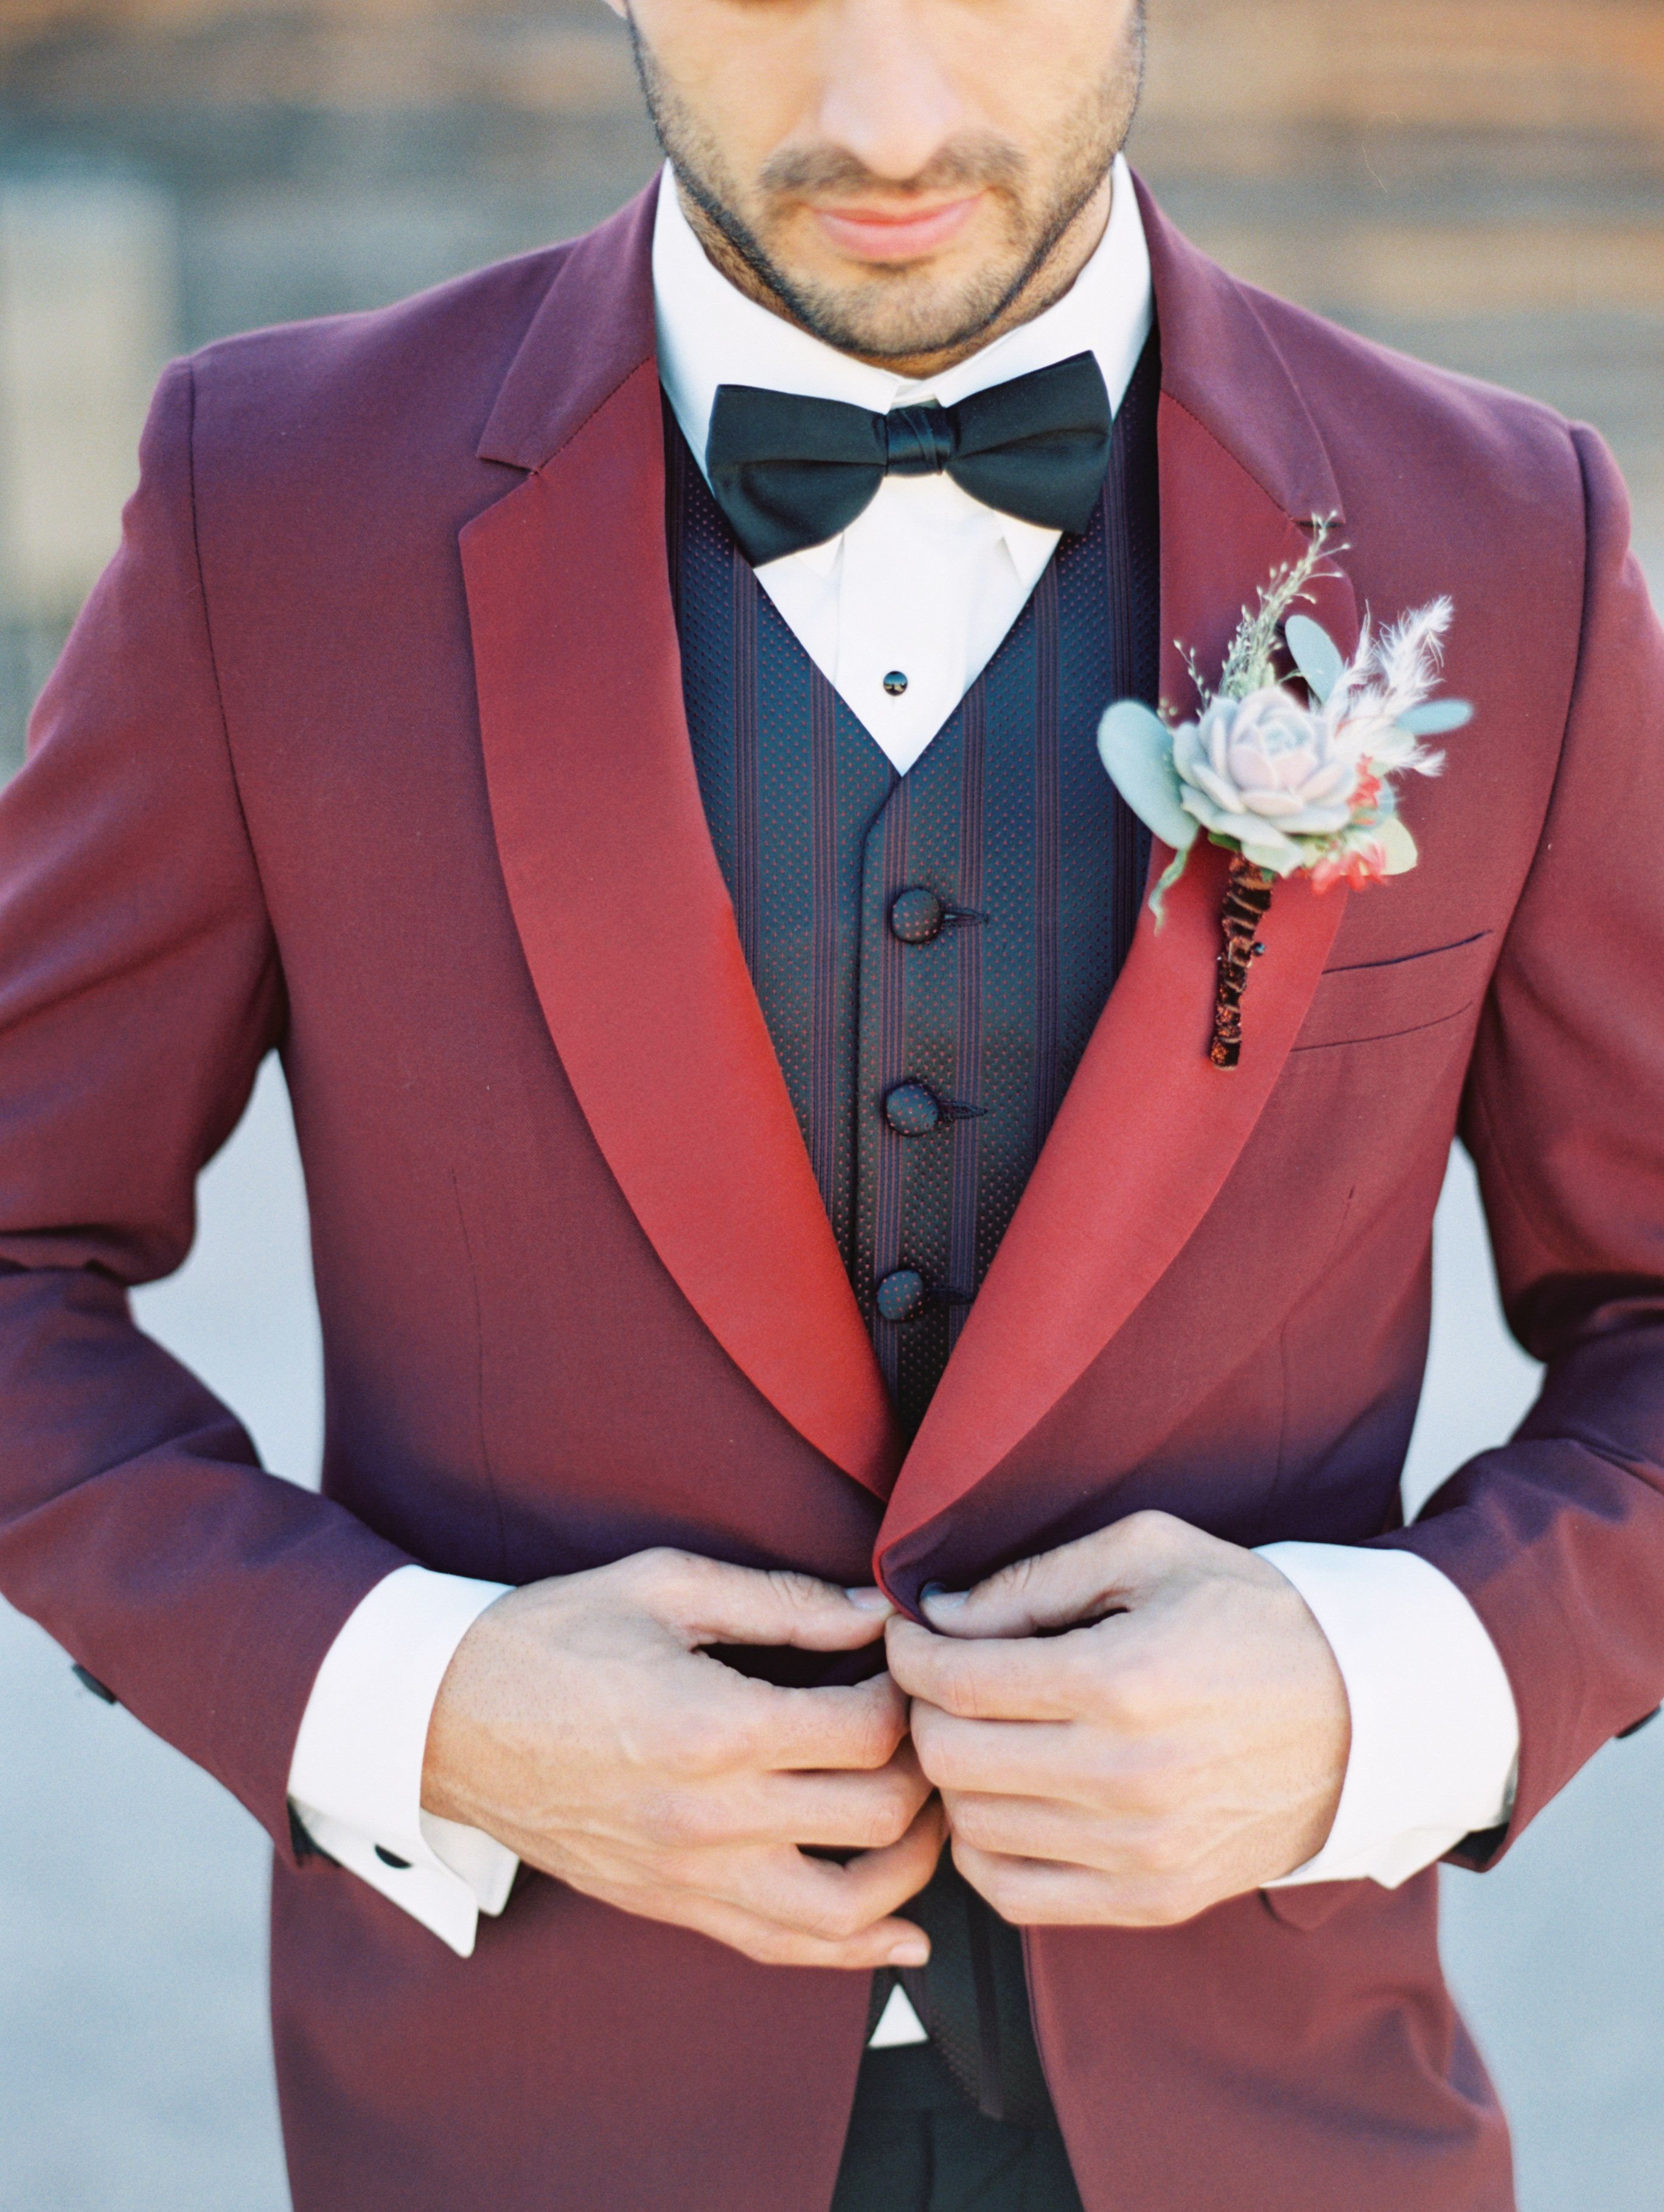 Как правильно выбрать мужской костюм на свадьбу? советы